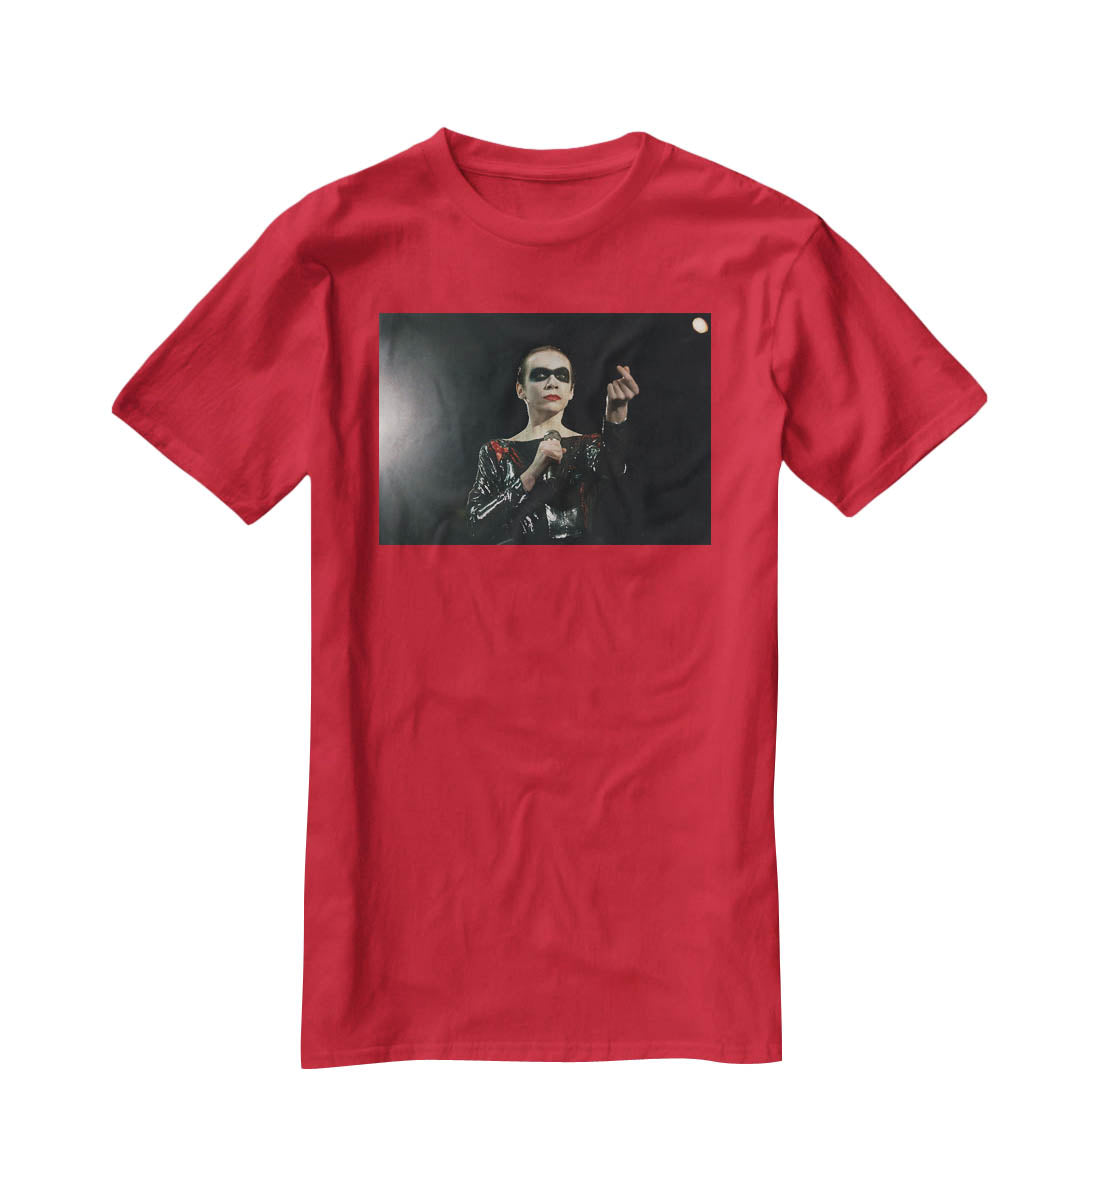 Annie Lennox in concert T-Shirt - Canvas Art Rocks - 4